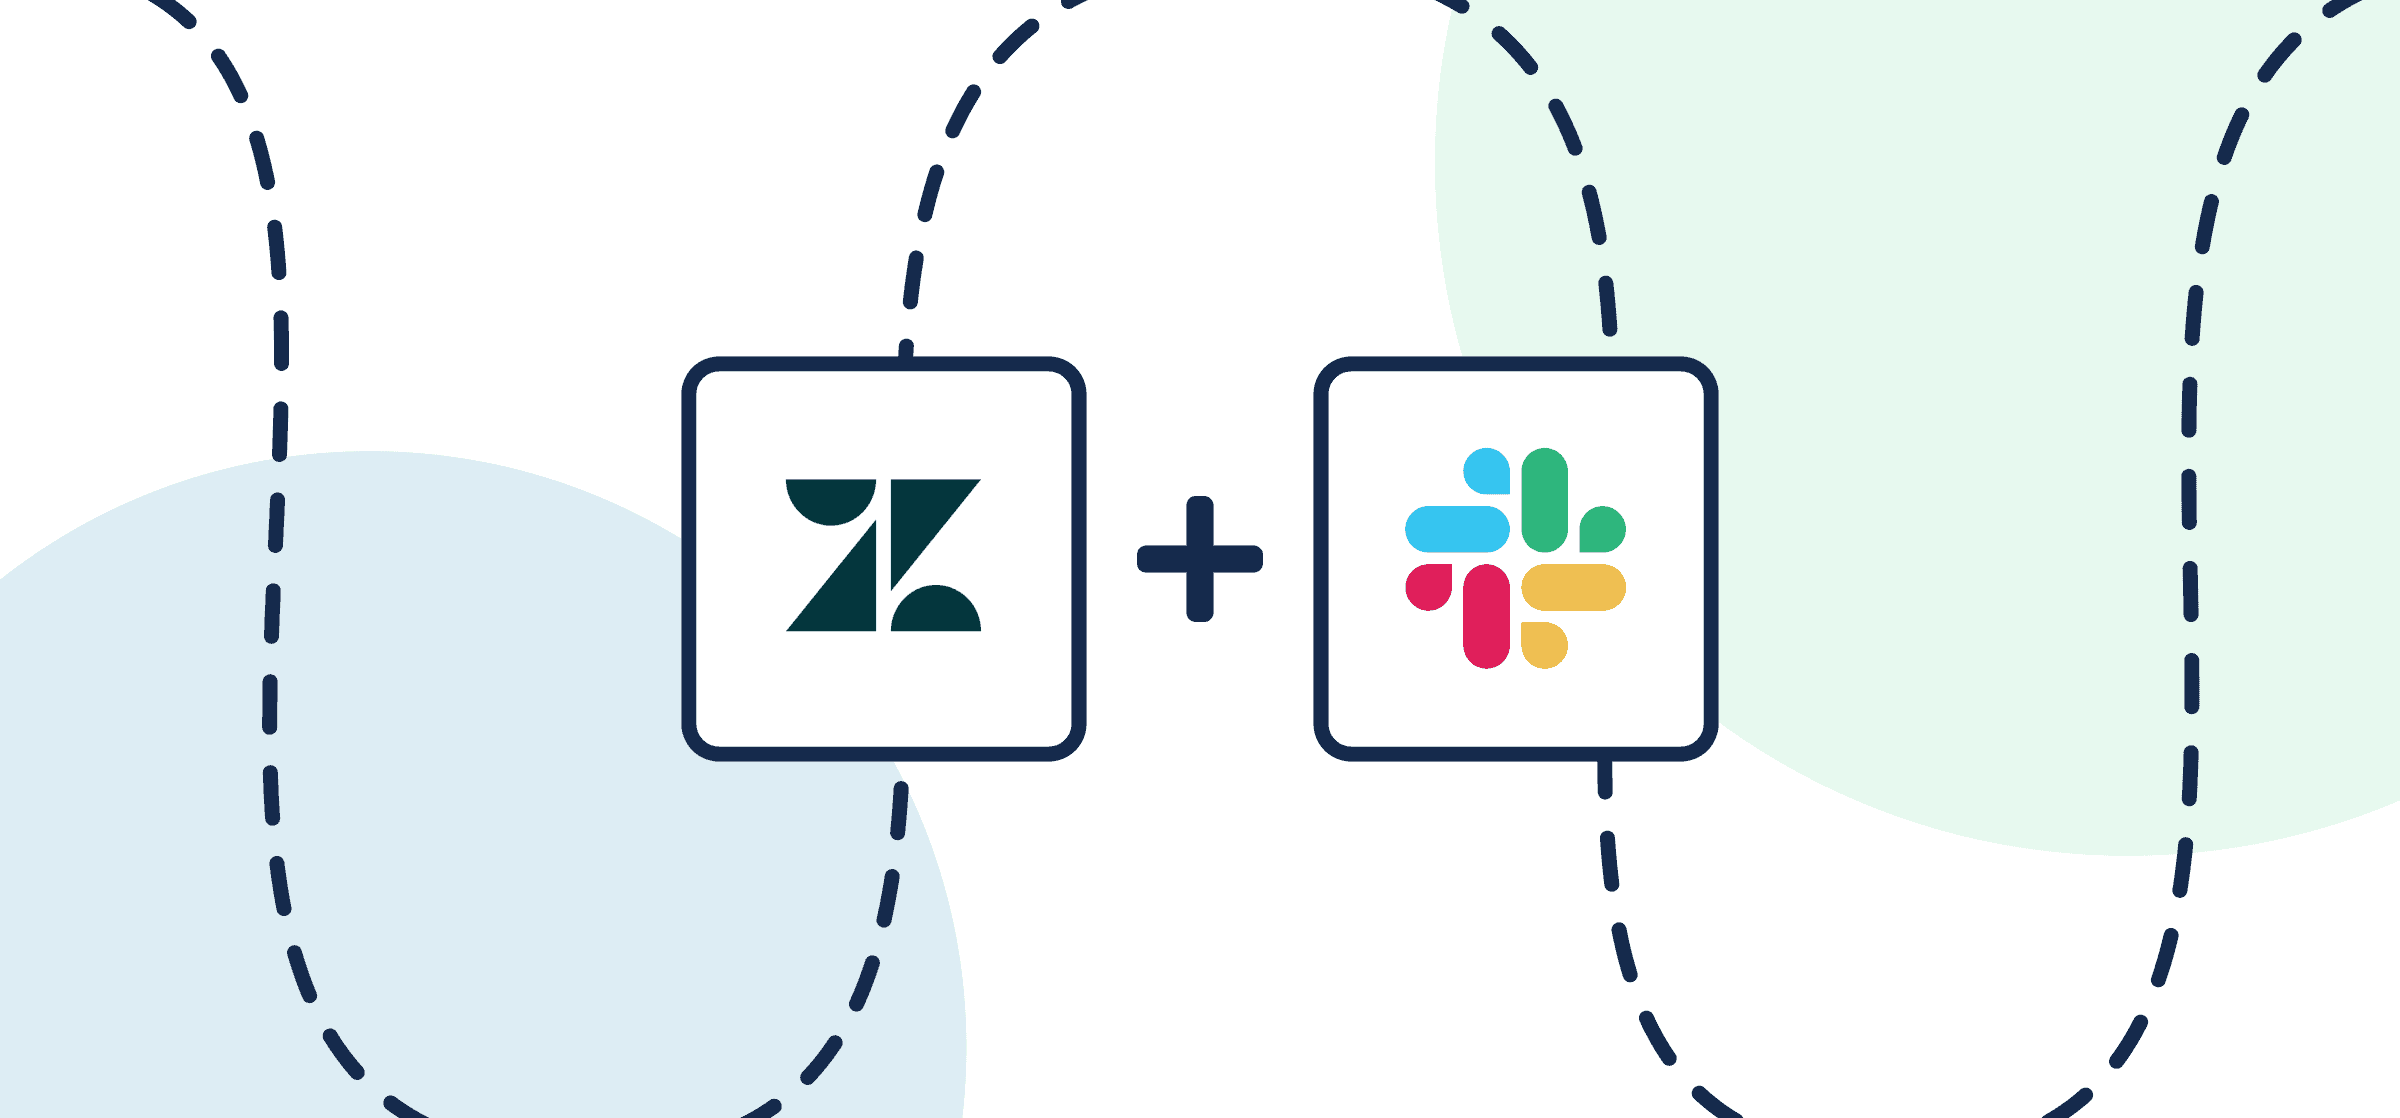 Logos for Zendesk and Slack